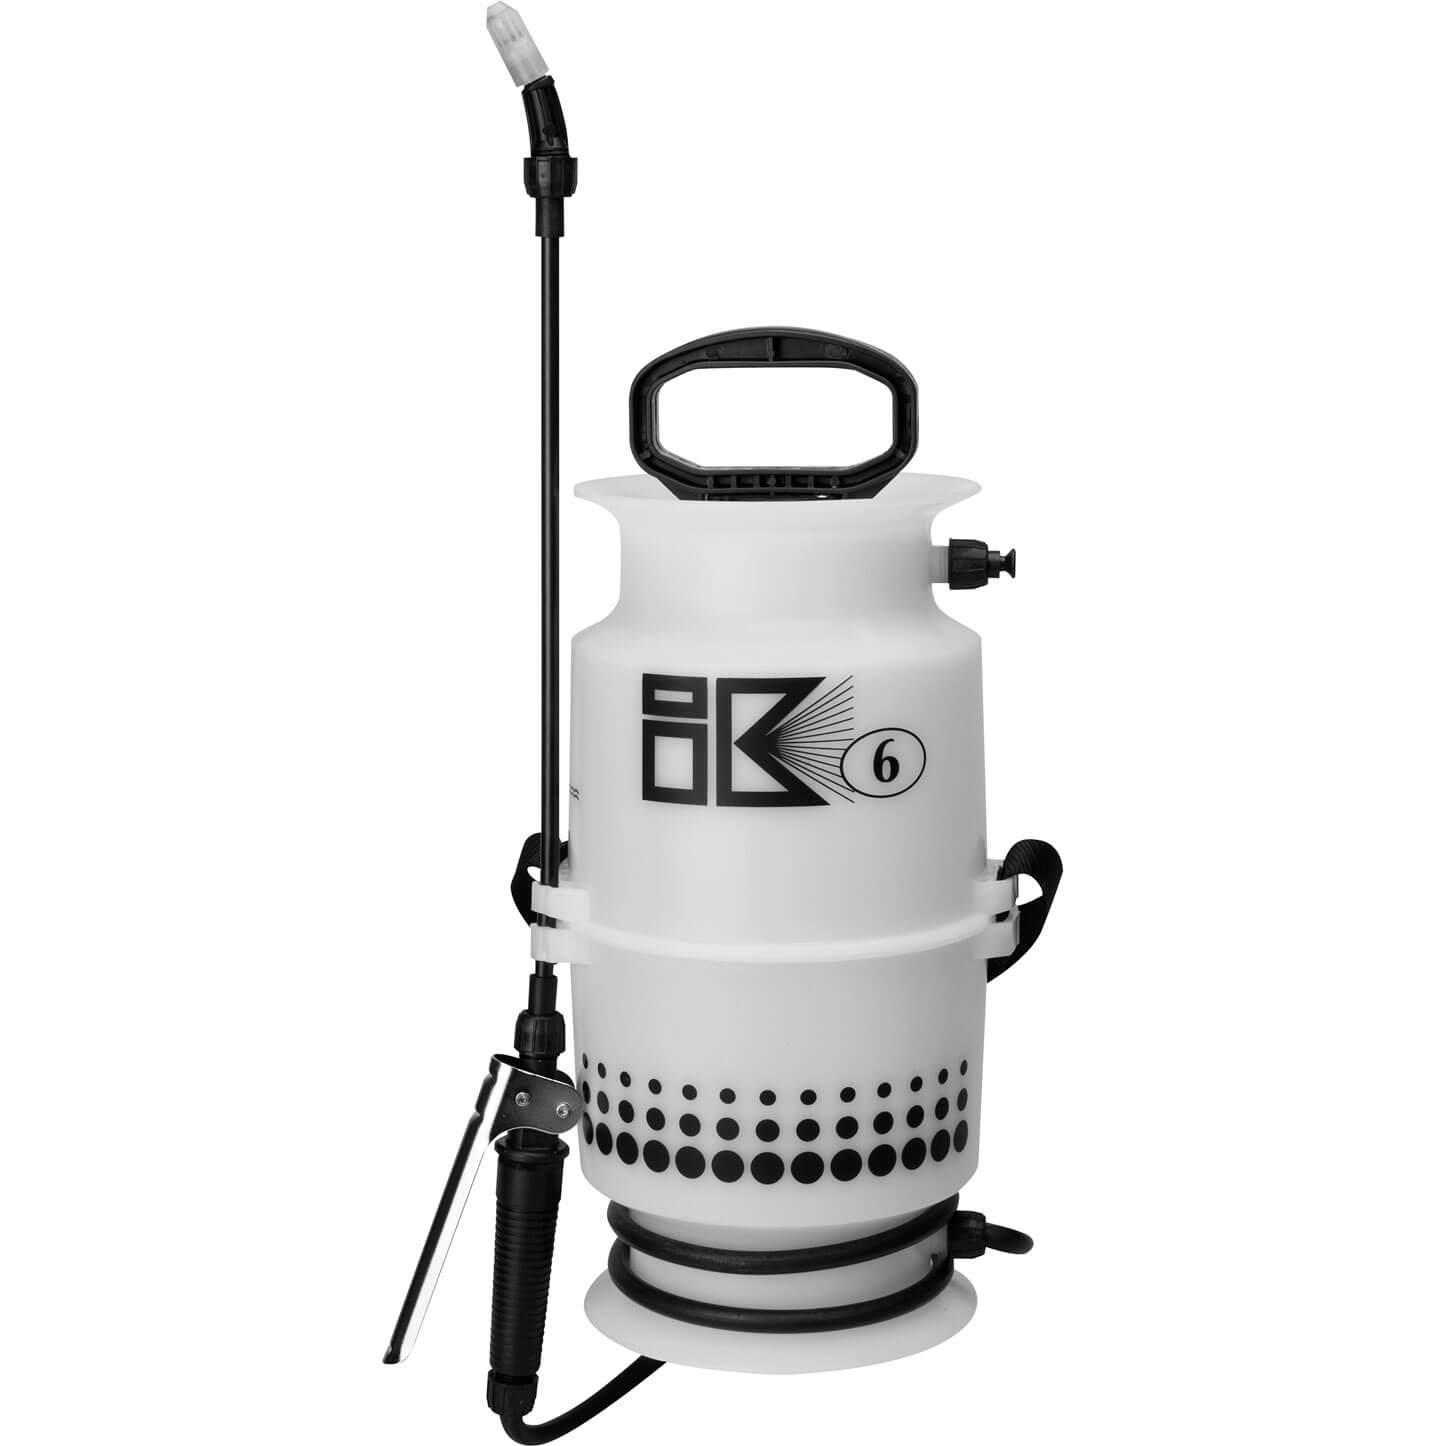 Matabi IK Water Pressure Sprayer 4l